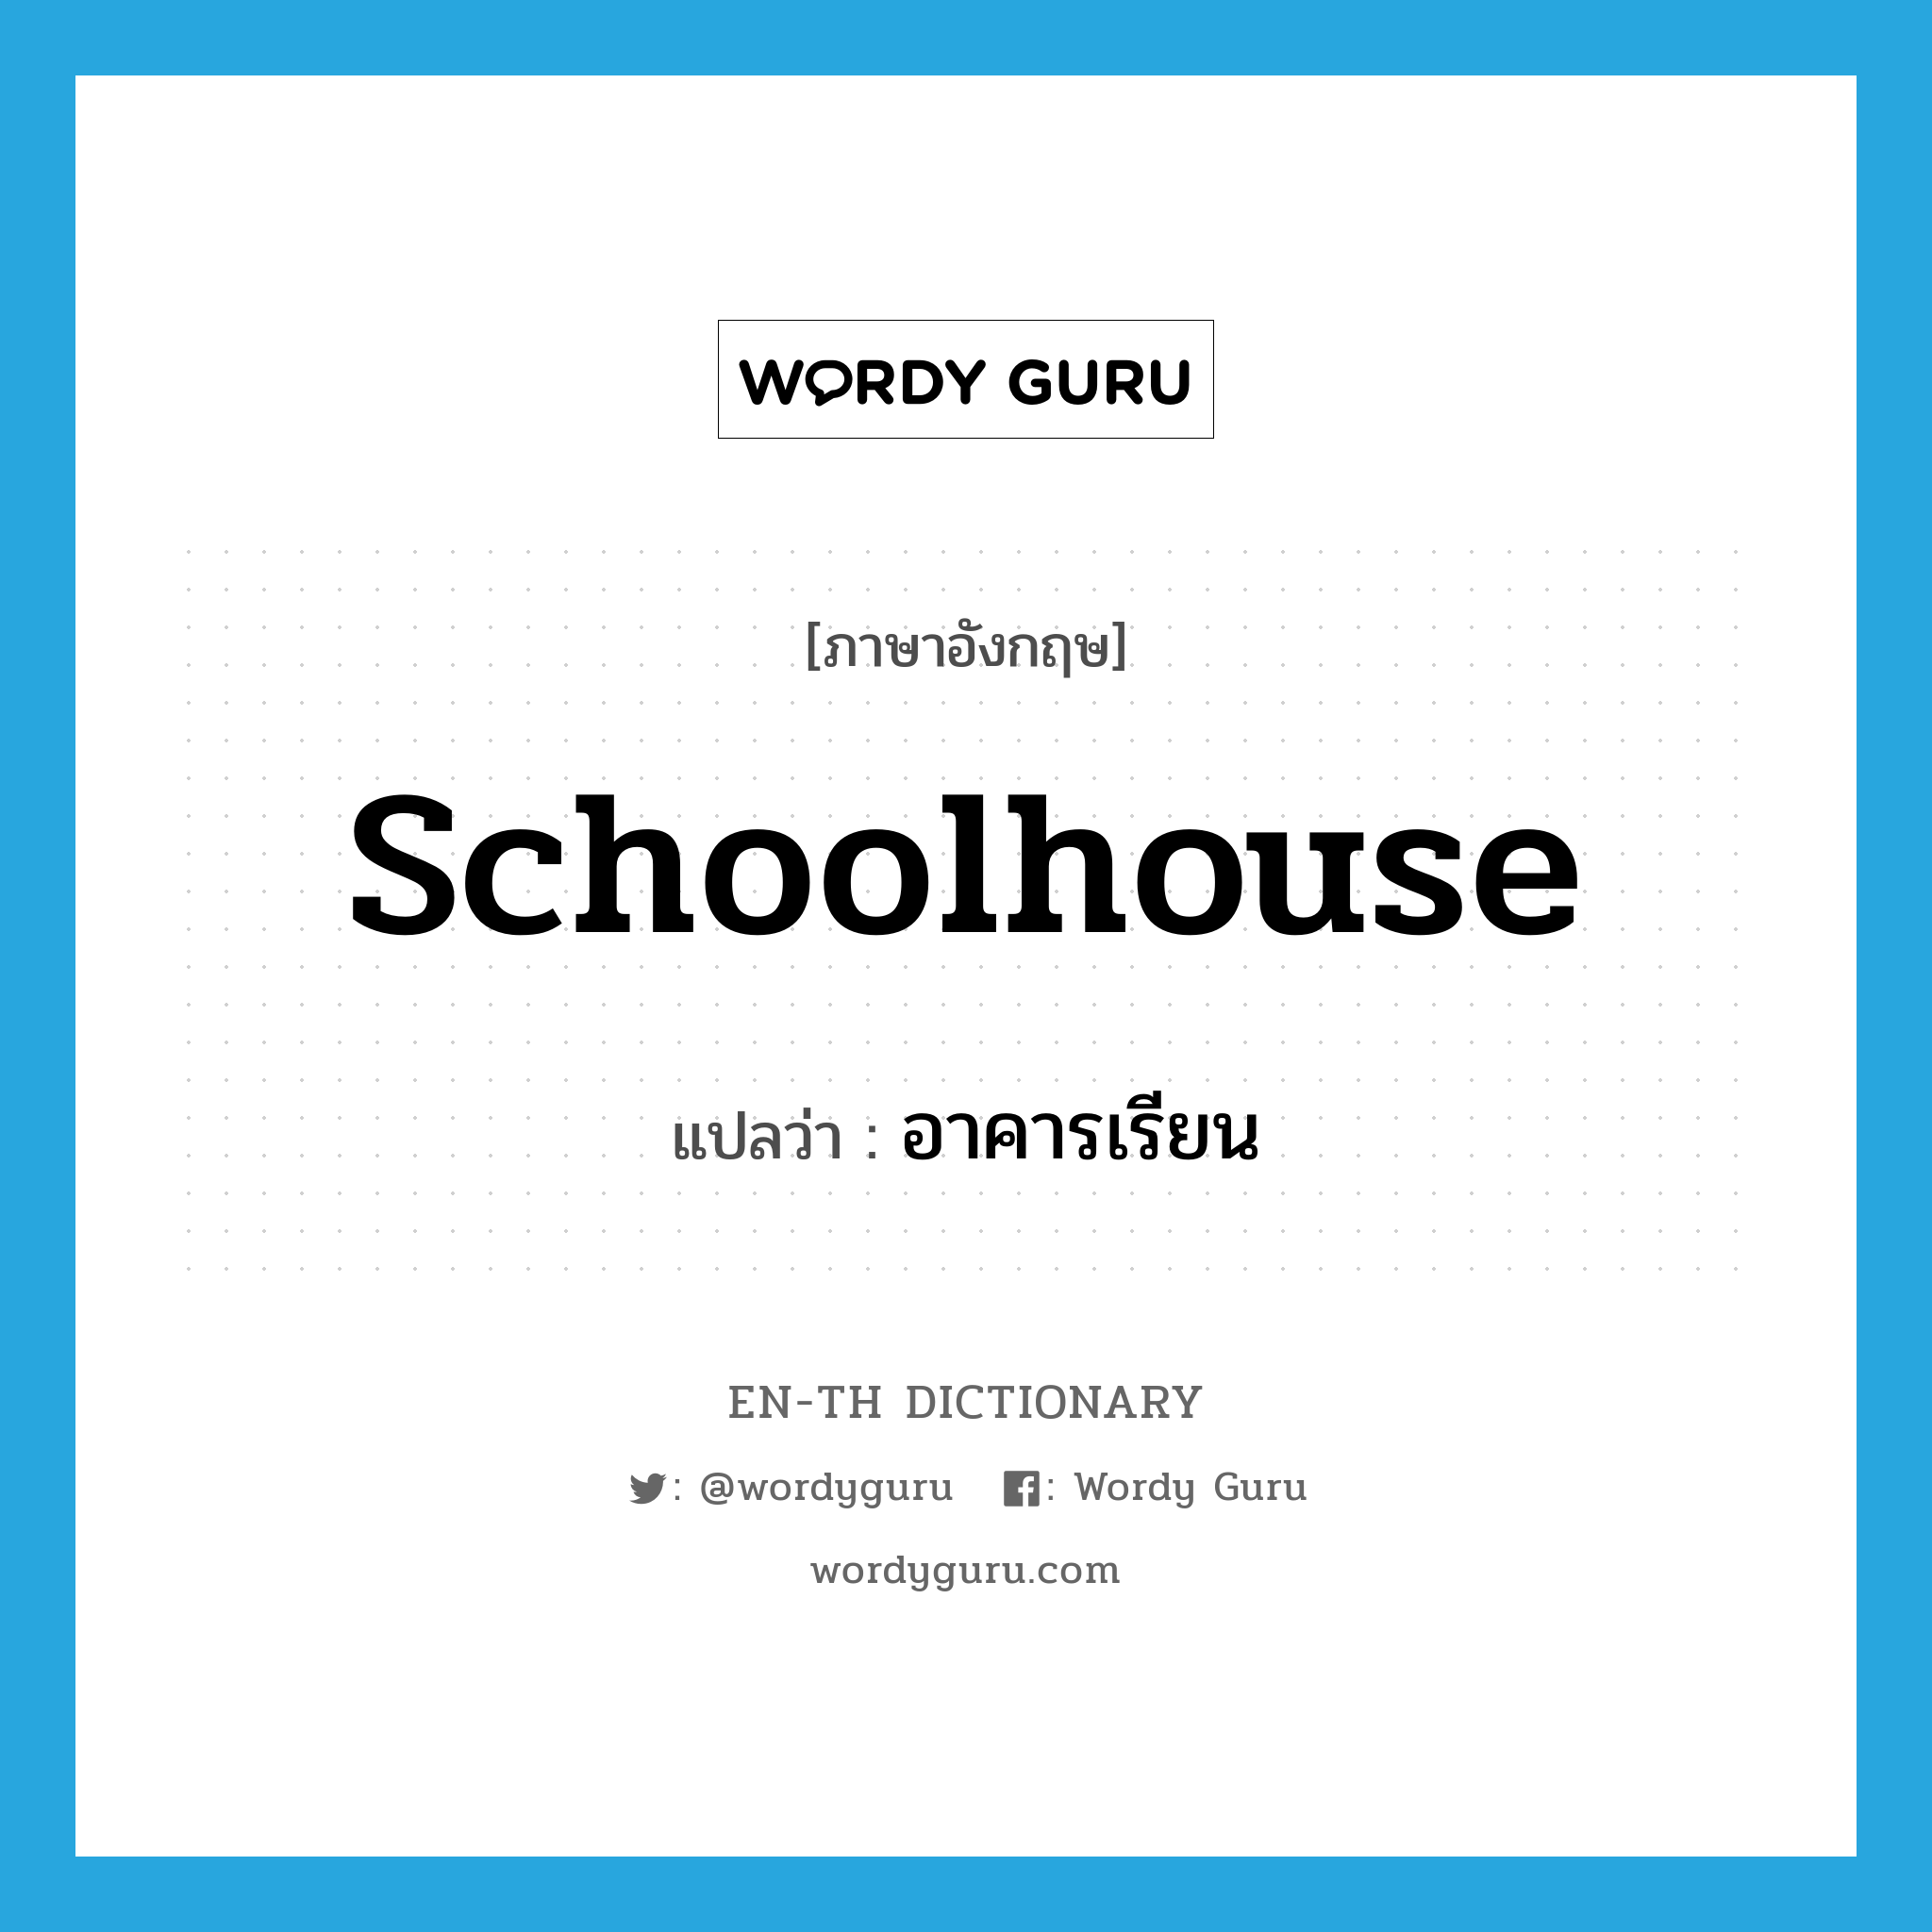 schoolhouse แปลว่า?, คำศัพท์ภาษาอังกฤษ schoolhouse แปลว่า อาคารเรียน ประเภท N หมวด N